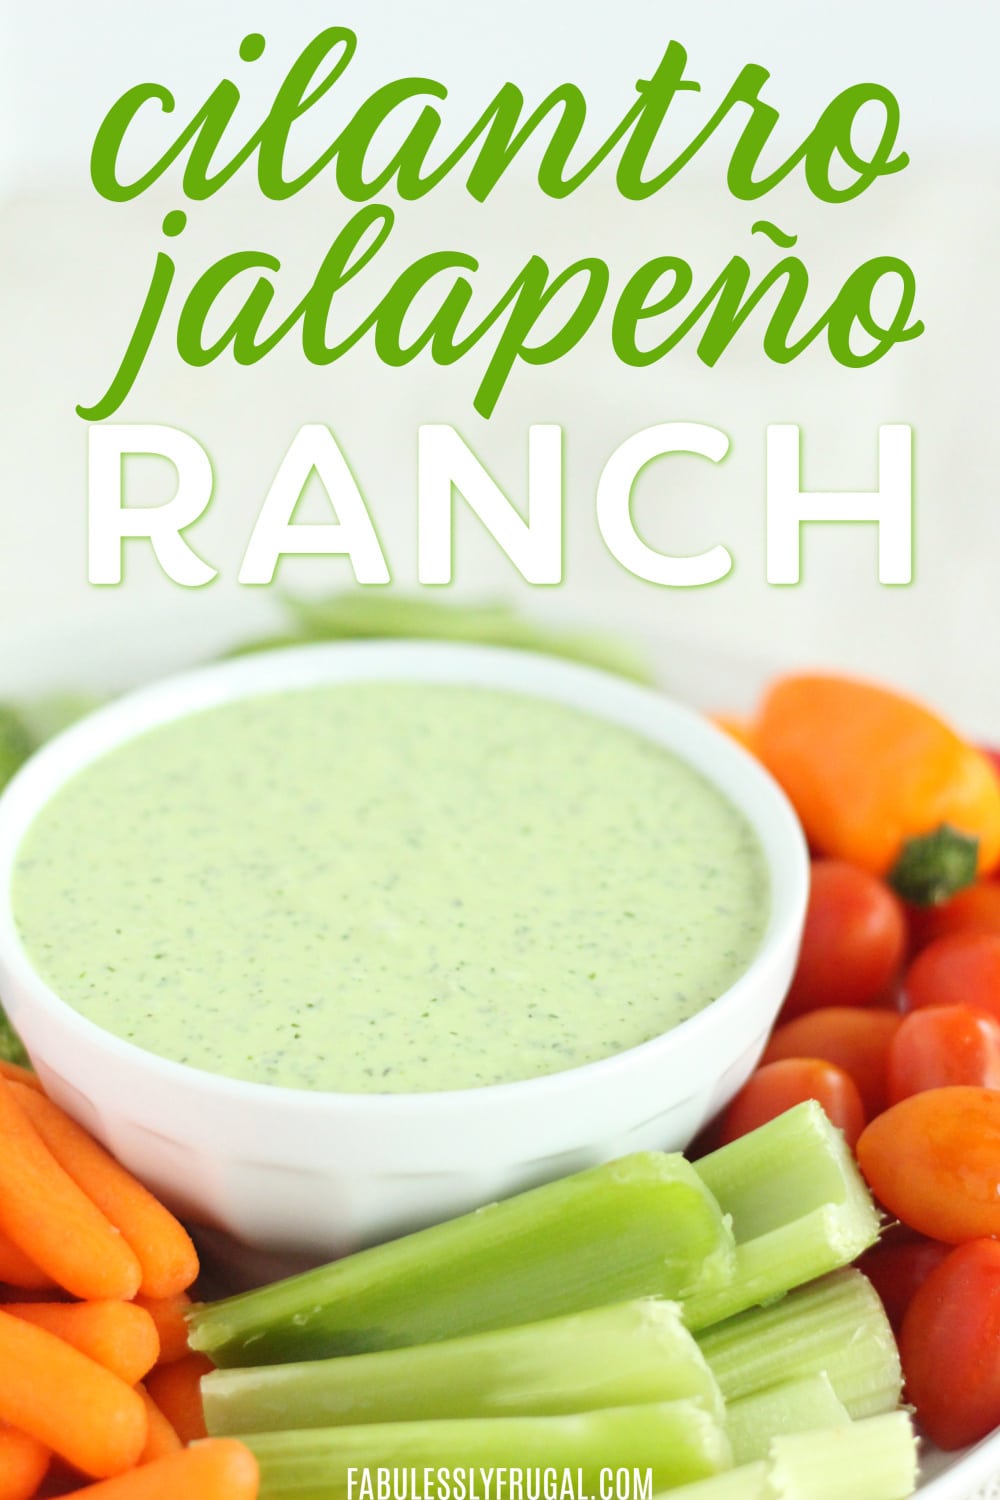 Cilantro jalapeno ranch dip recipe